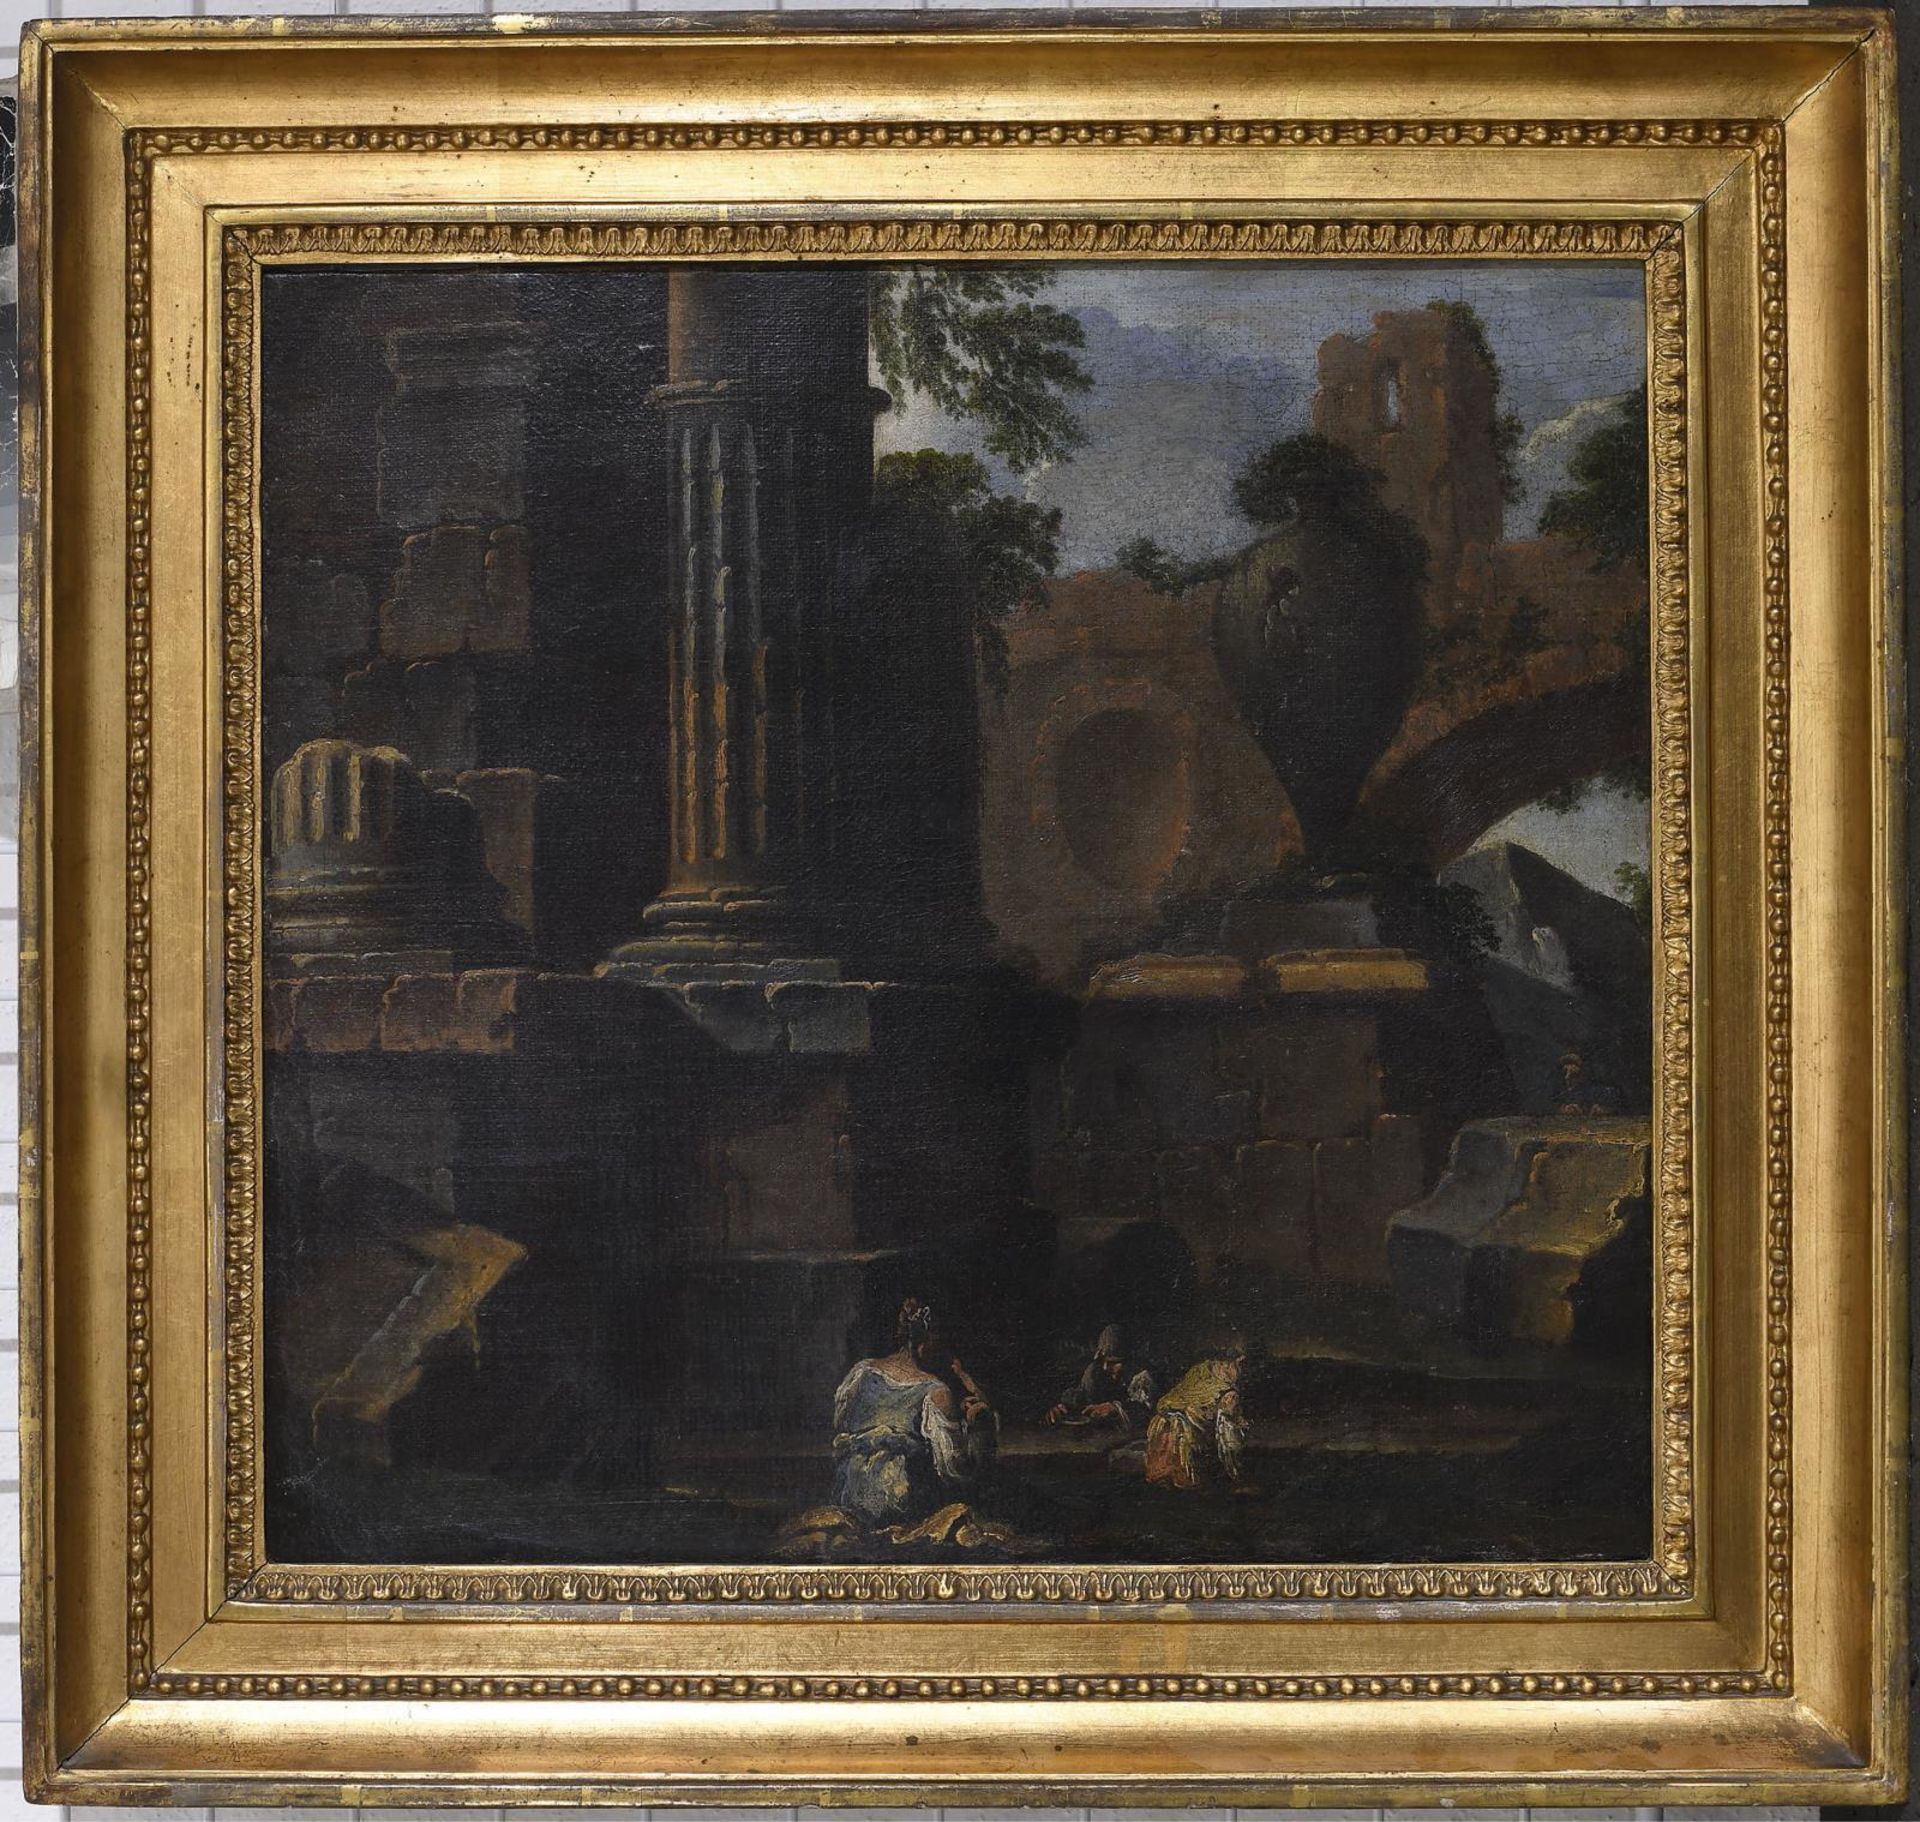 ROSA, SALVATOR (ART DES). Ruine mit Figurenstaffage. Öl auf Leinwand. - Bild 2 aus 3